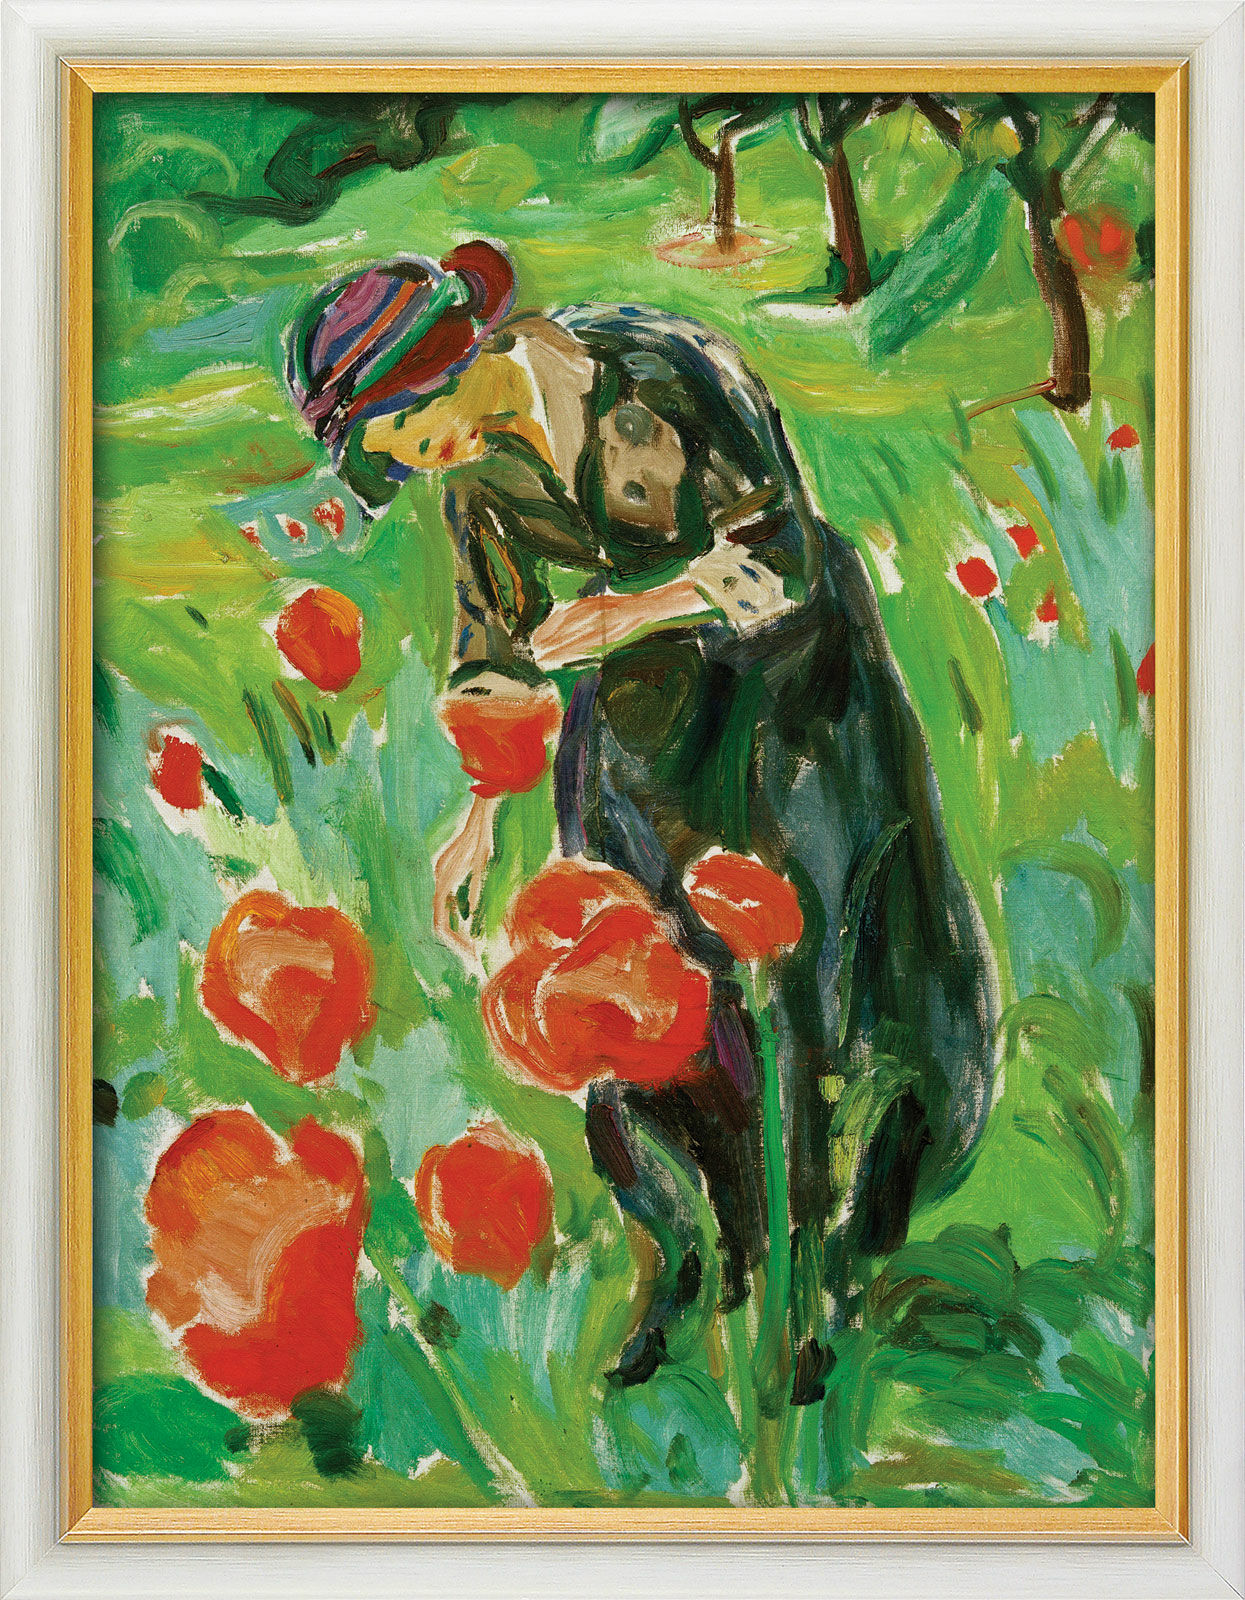 Beeld "Vrouw met klaprozen" (1918/19), ingelijst von Edvard Munch